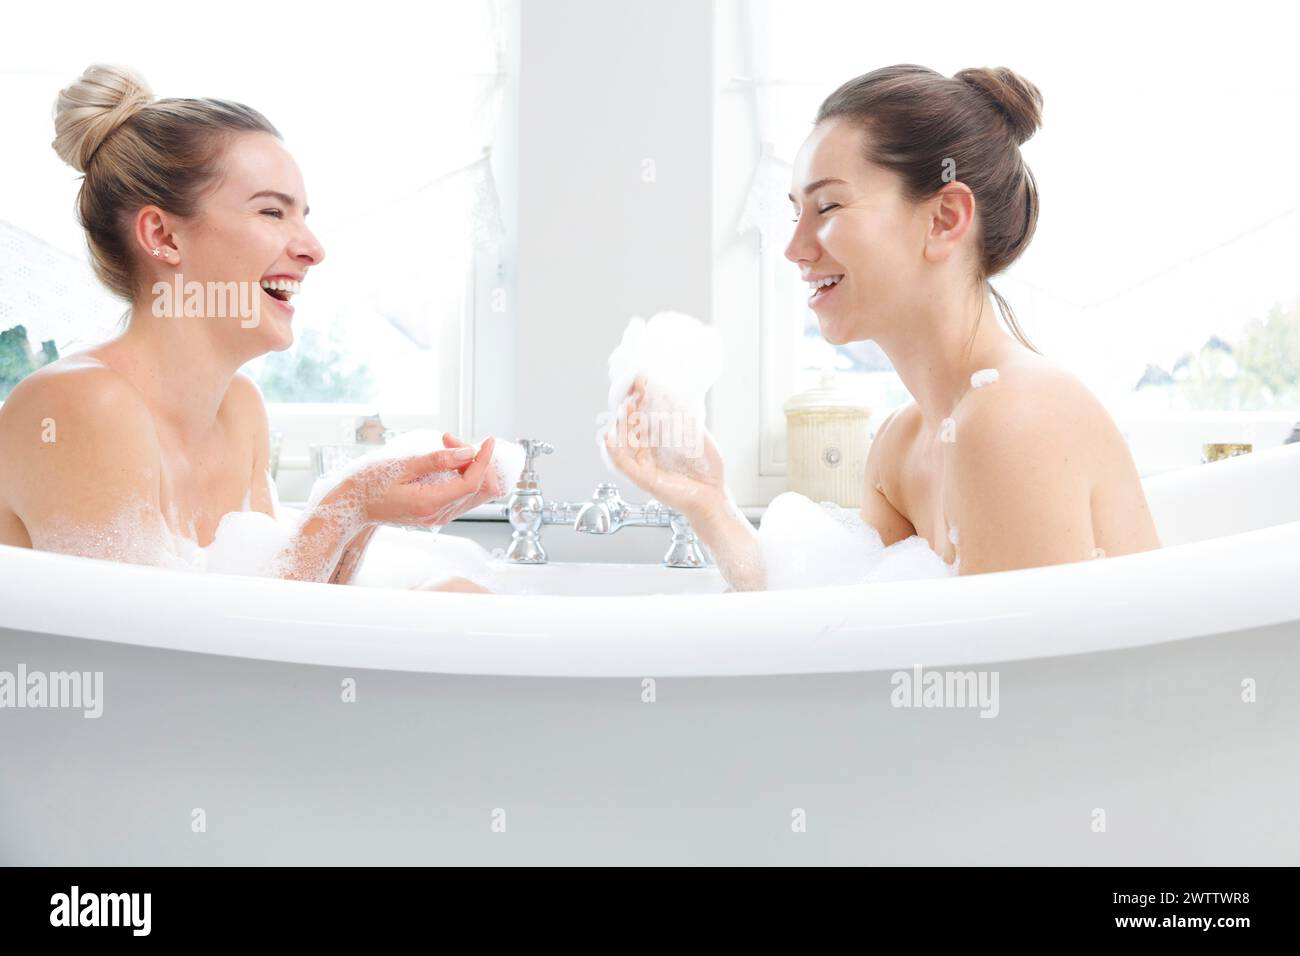 Deux femmes riant dans un bain moussant Banque D'Images